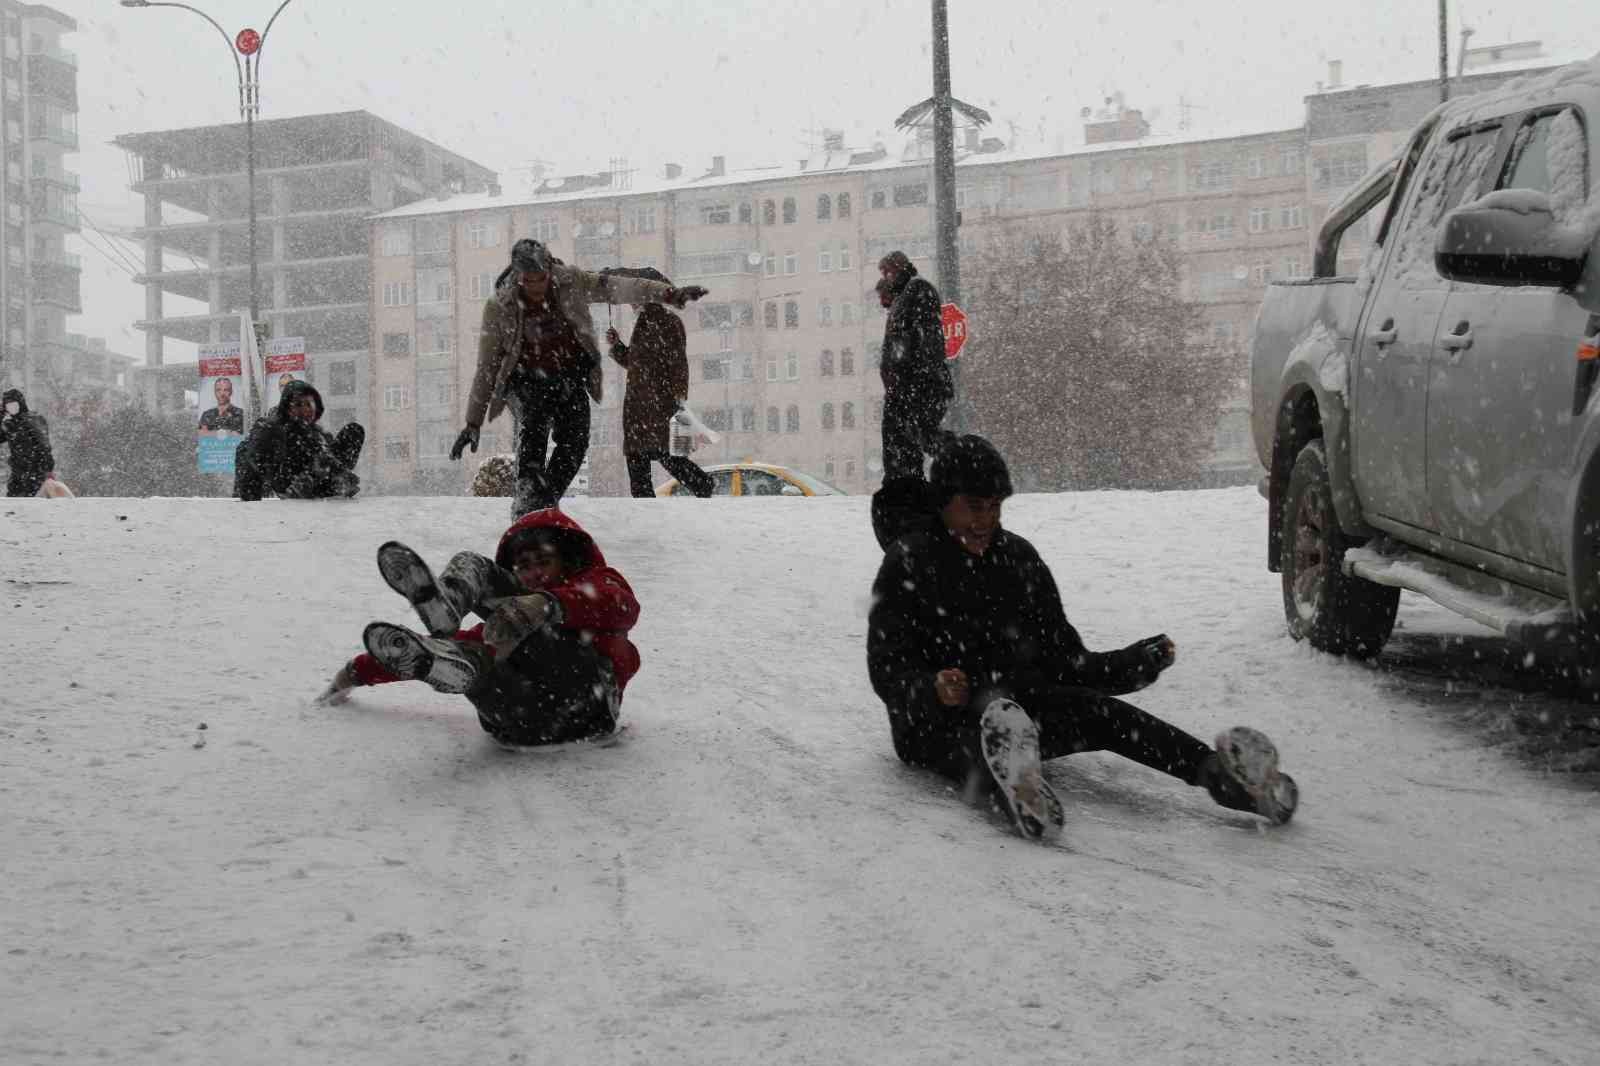 Elazığ’da karın keyfini çocuklar çıkardı #elazig